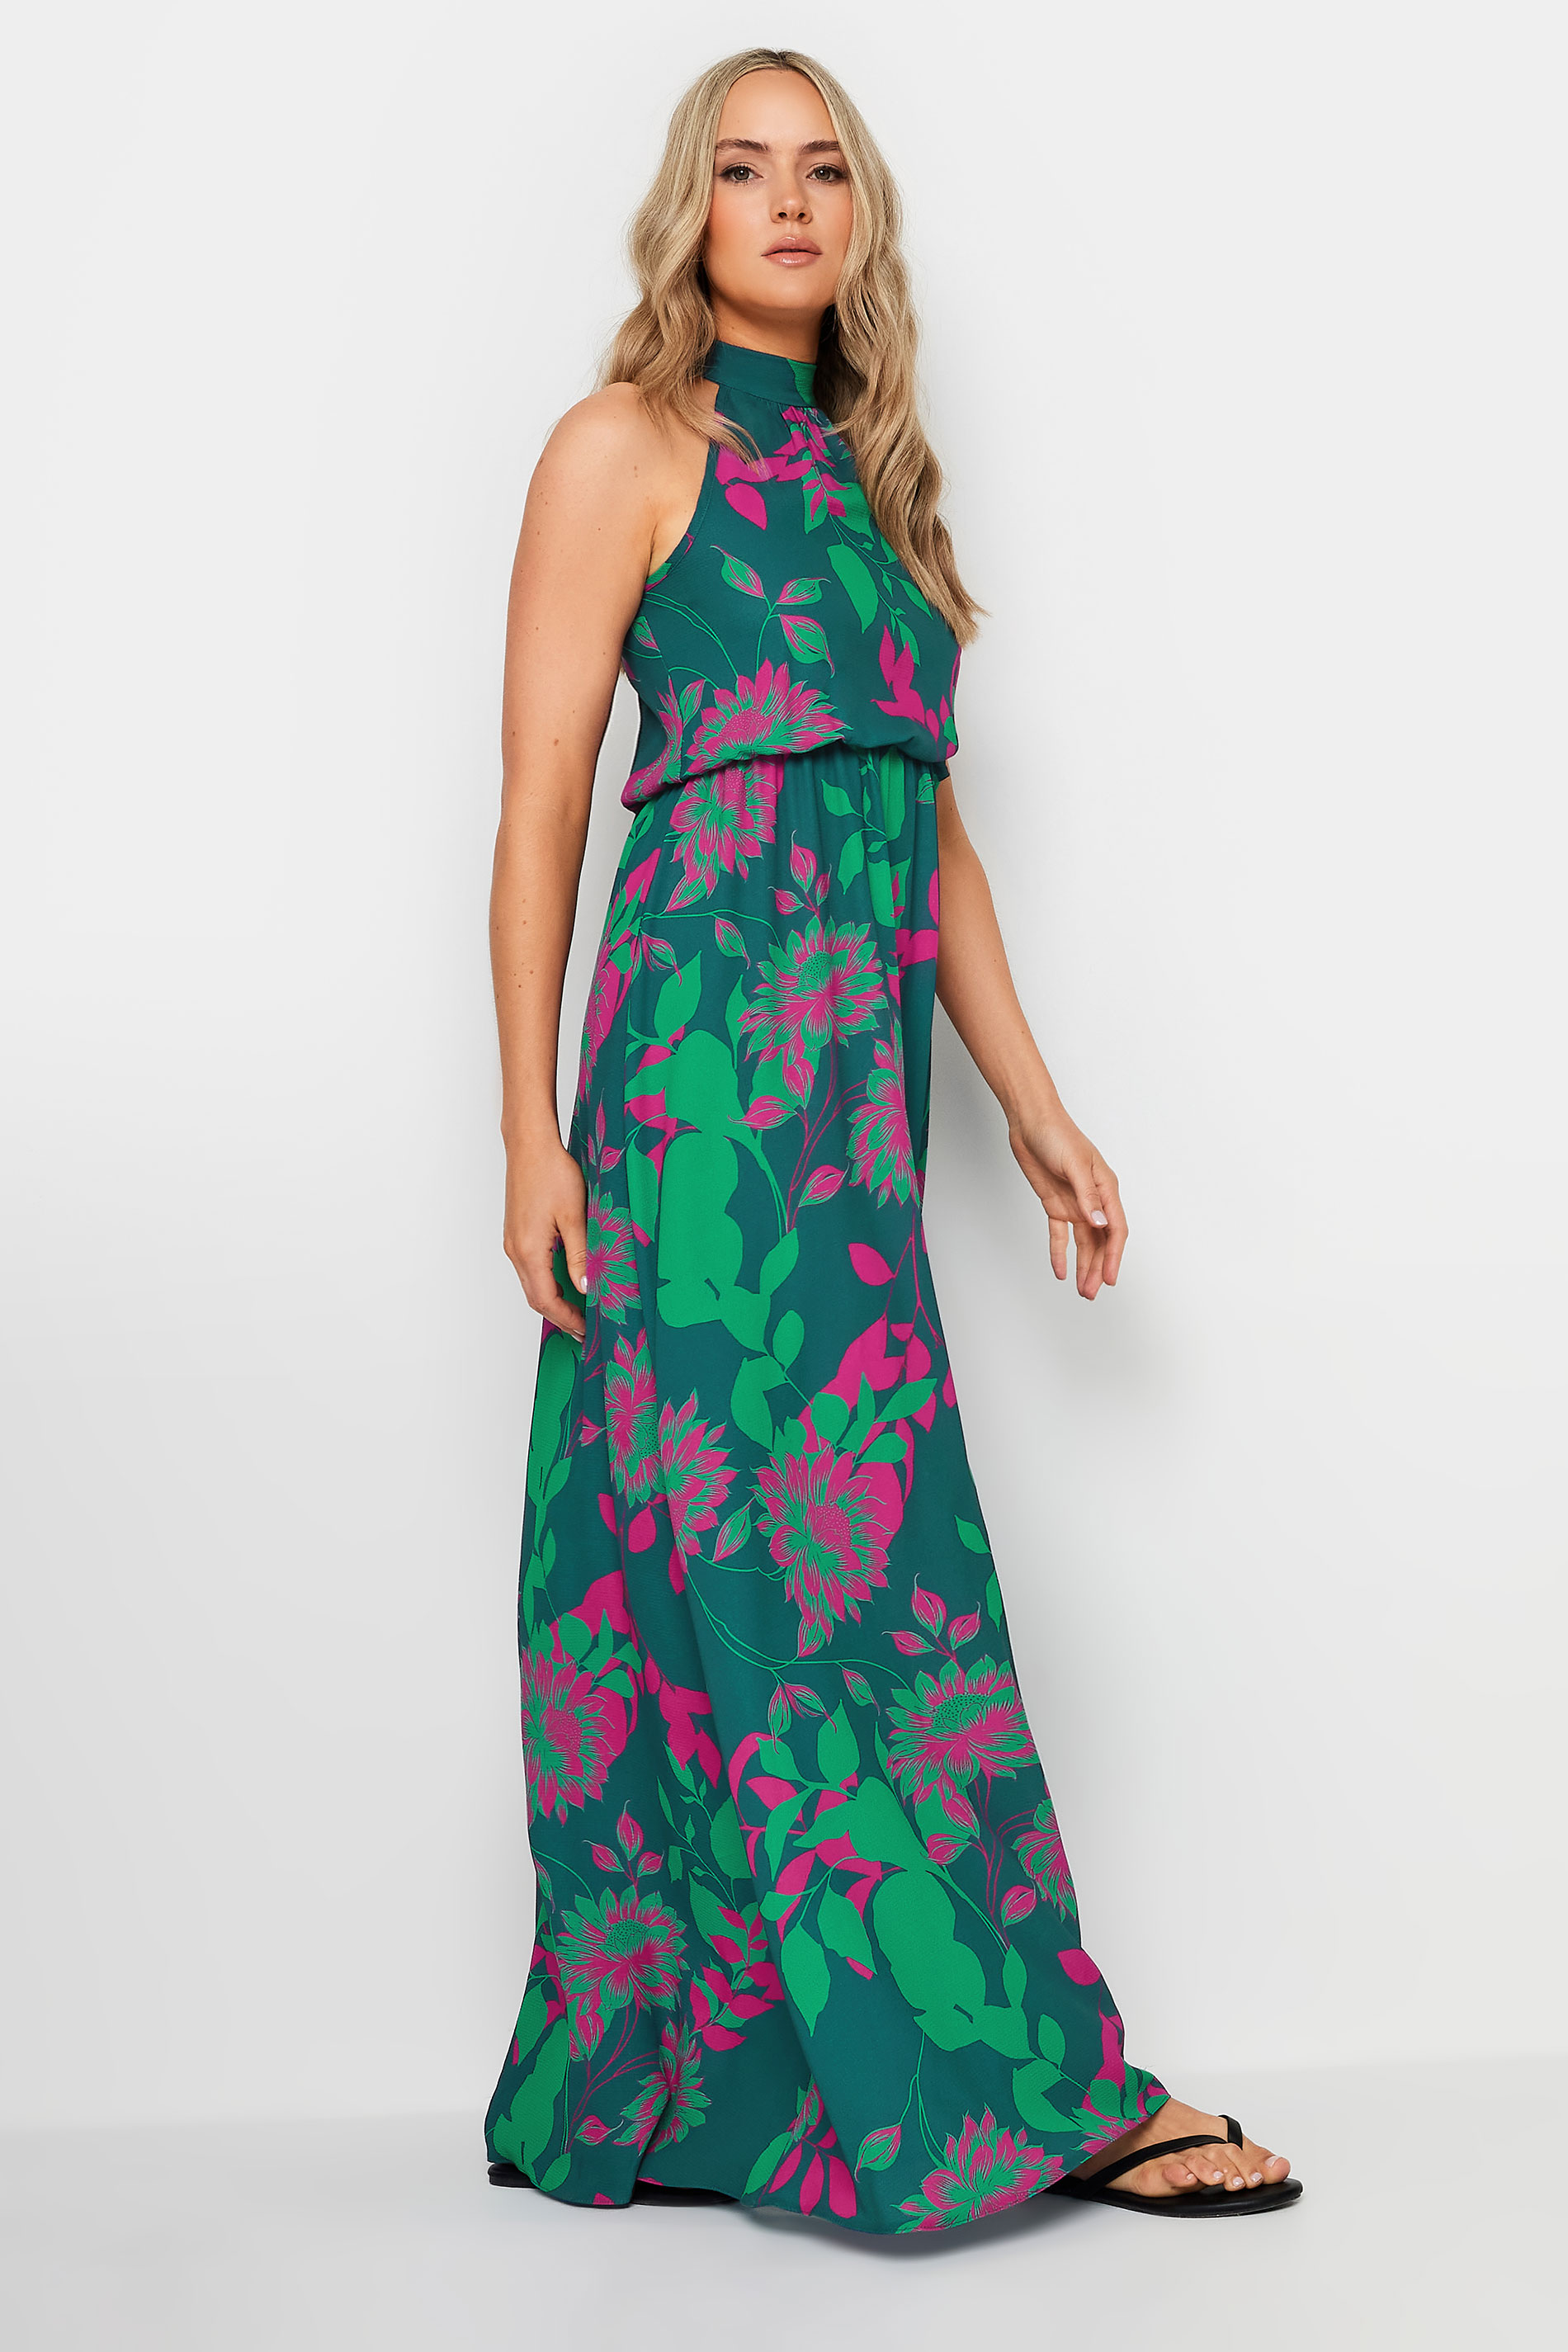 LTS Tall Women's Green Floral Print Halter Neck Dress | Long Tall Sally 2